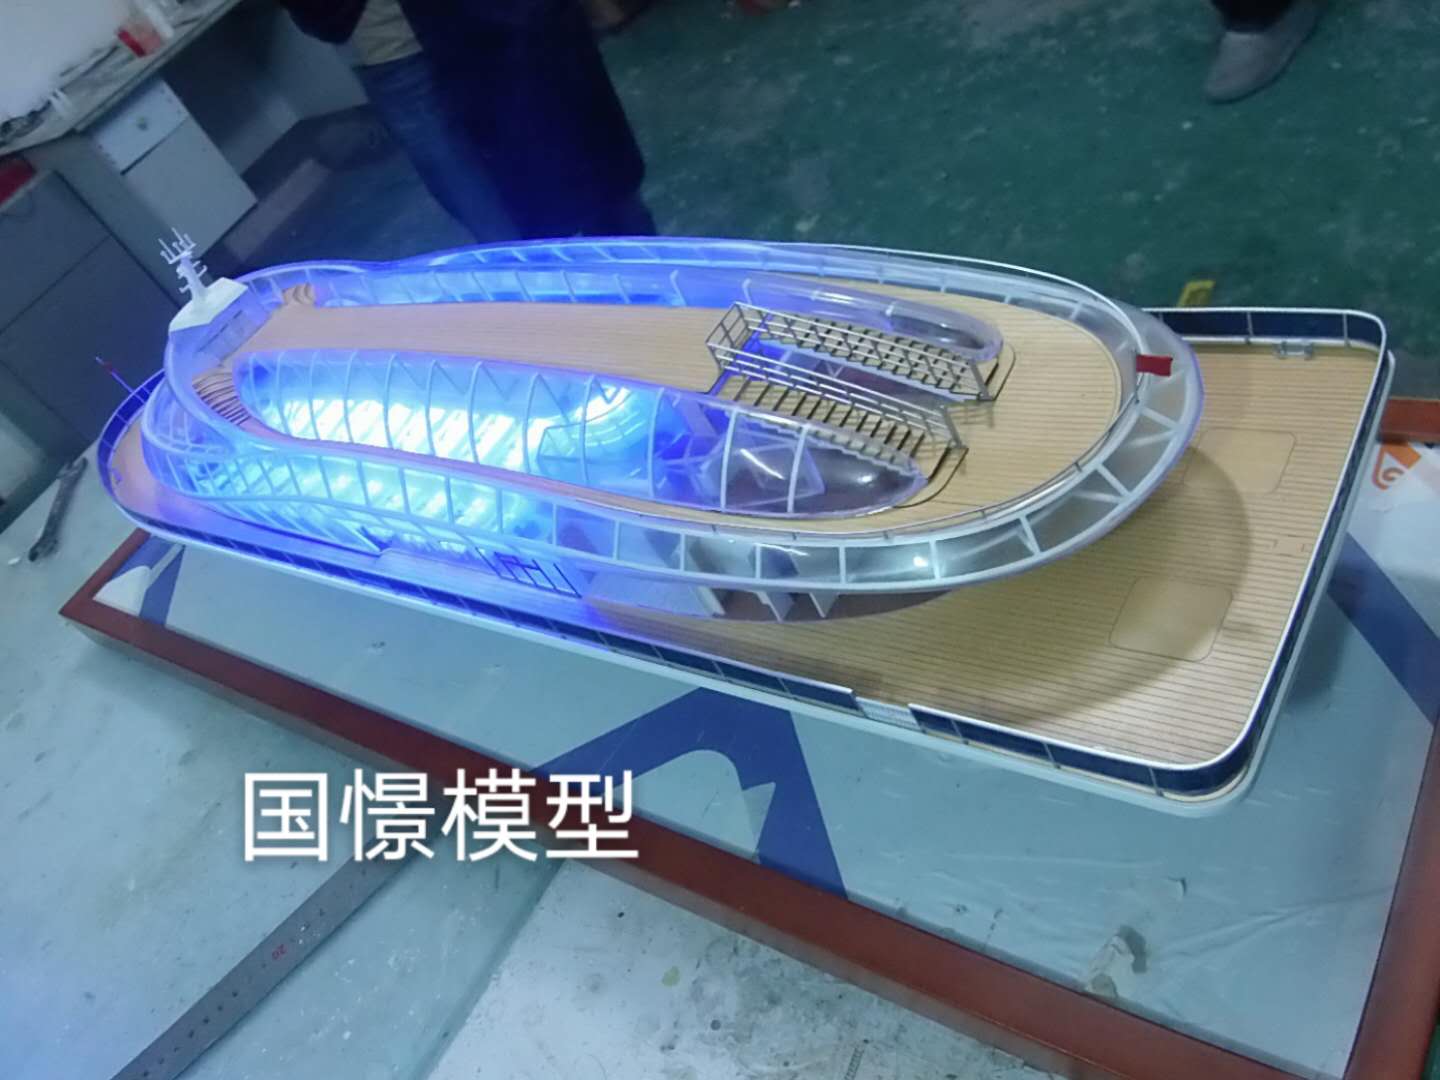 北京船舶模型